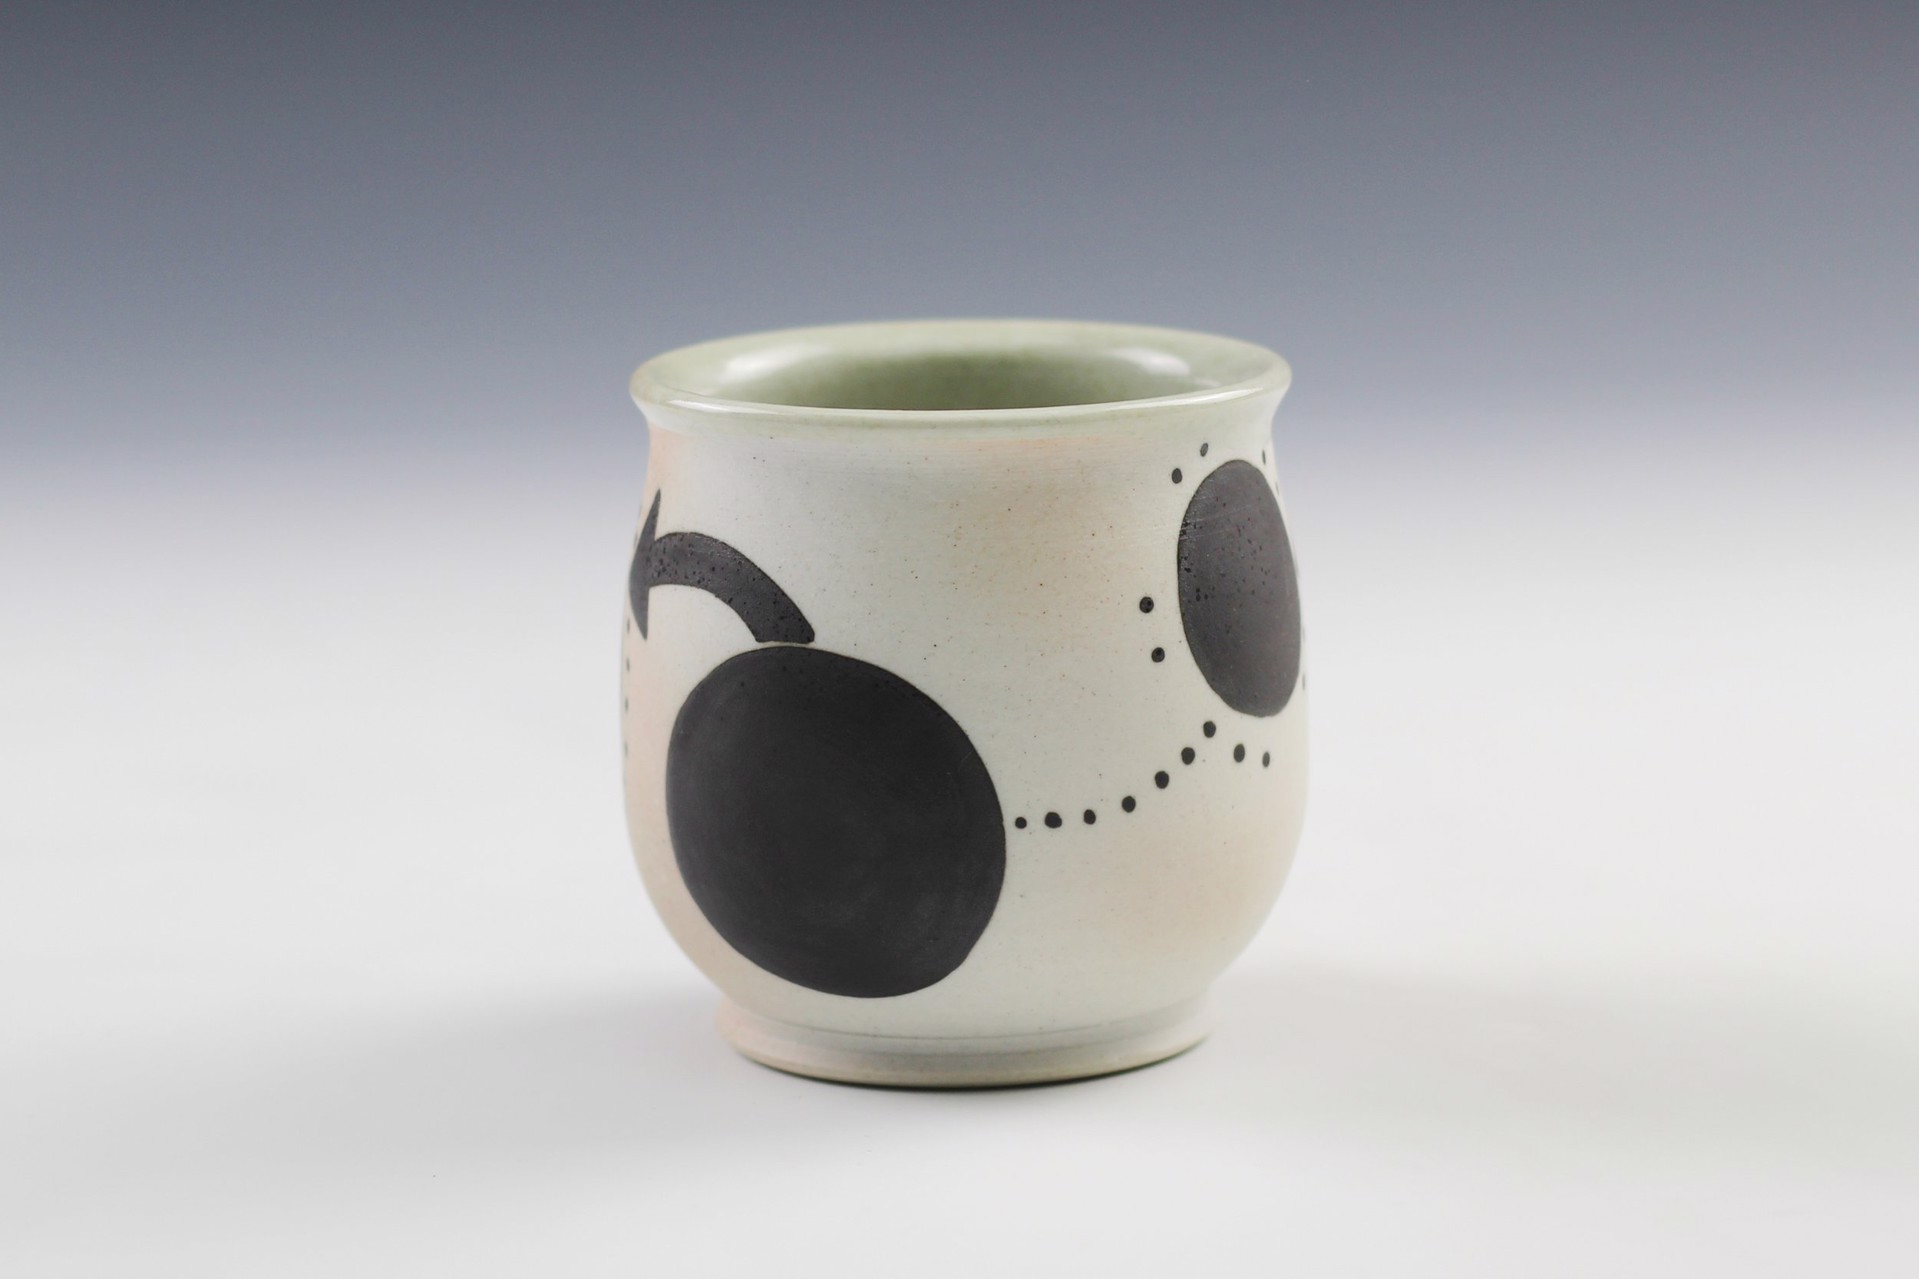 cup by Joanne Kirkland